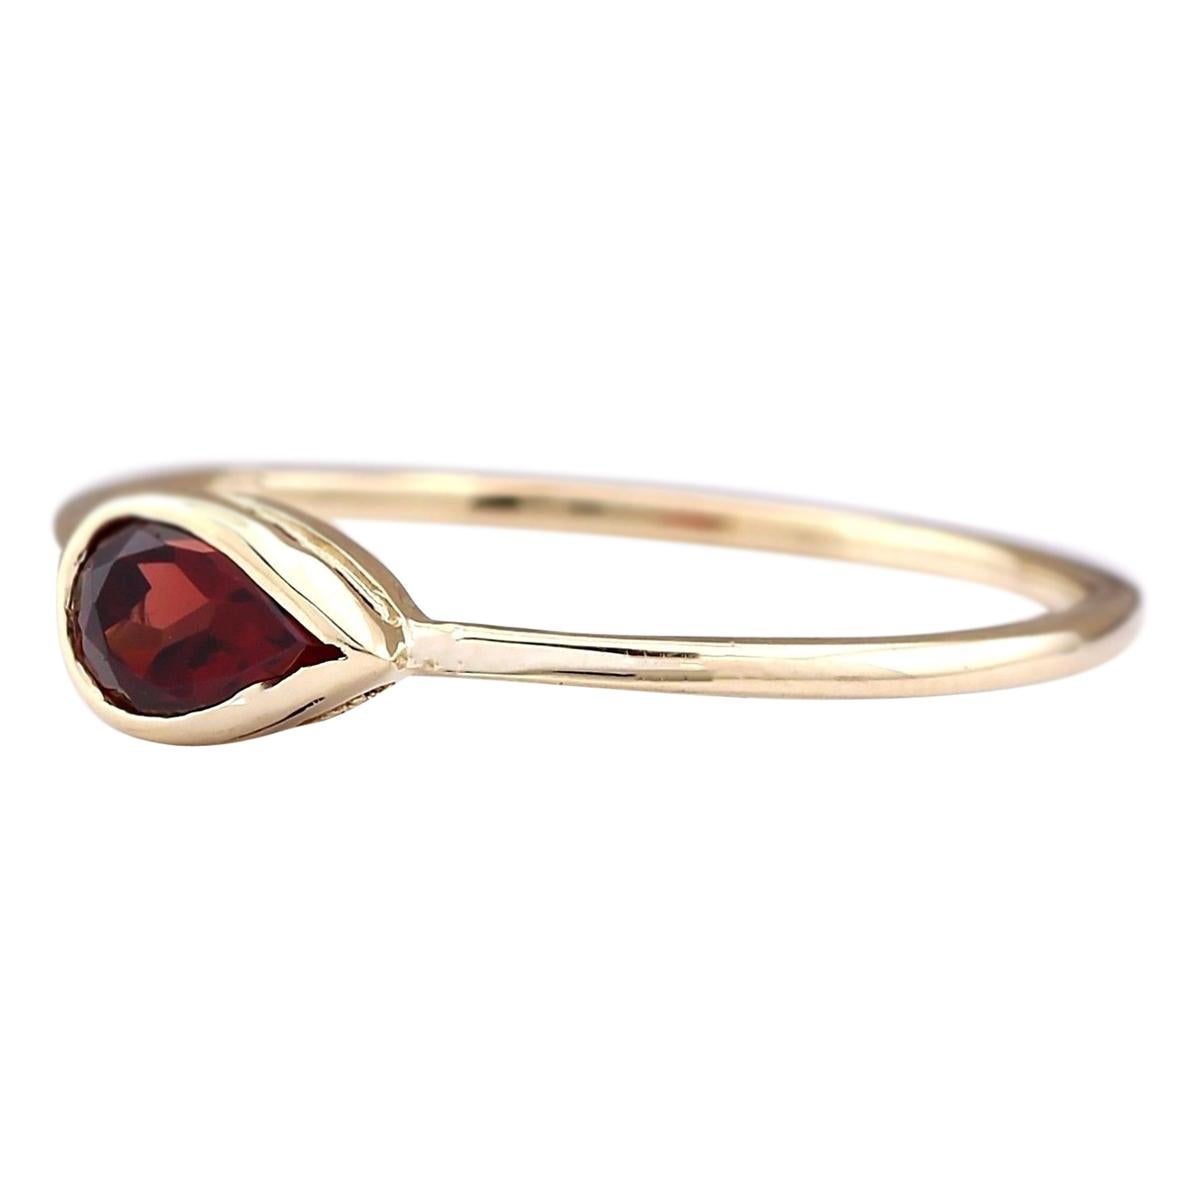 Unser charmanter Ring aus 14-karätigem Gelbgold ist mit einem bezaubernden Rhodolith-Granat von 0,50 Karat geschmückt. Der Ring ist mit einem Echtheitsstempel versehen und wiegt insgesamt 1,1 Gramm, wodurch er leicht und angenehm zu tragen ist. Der